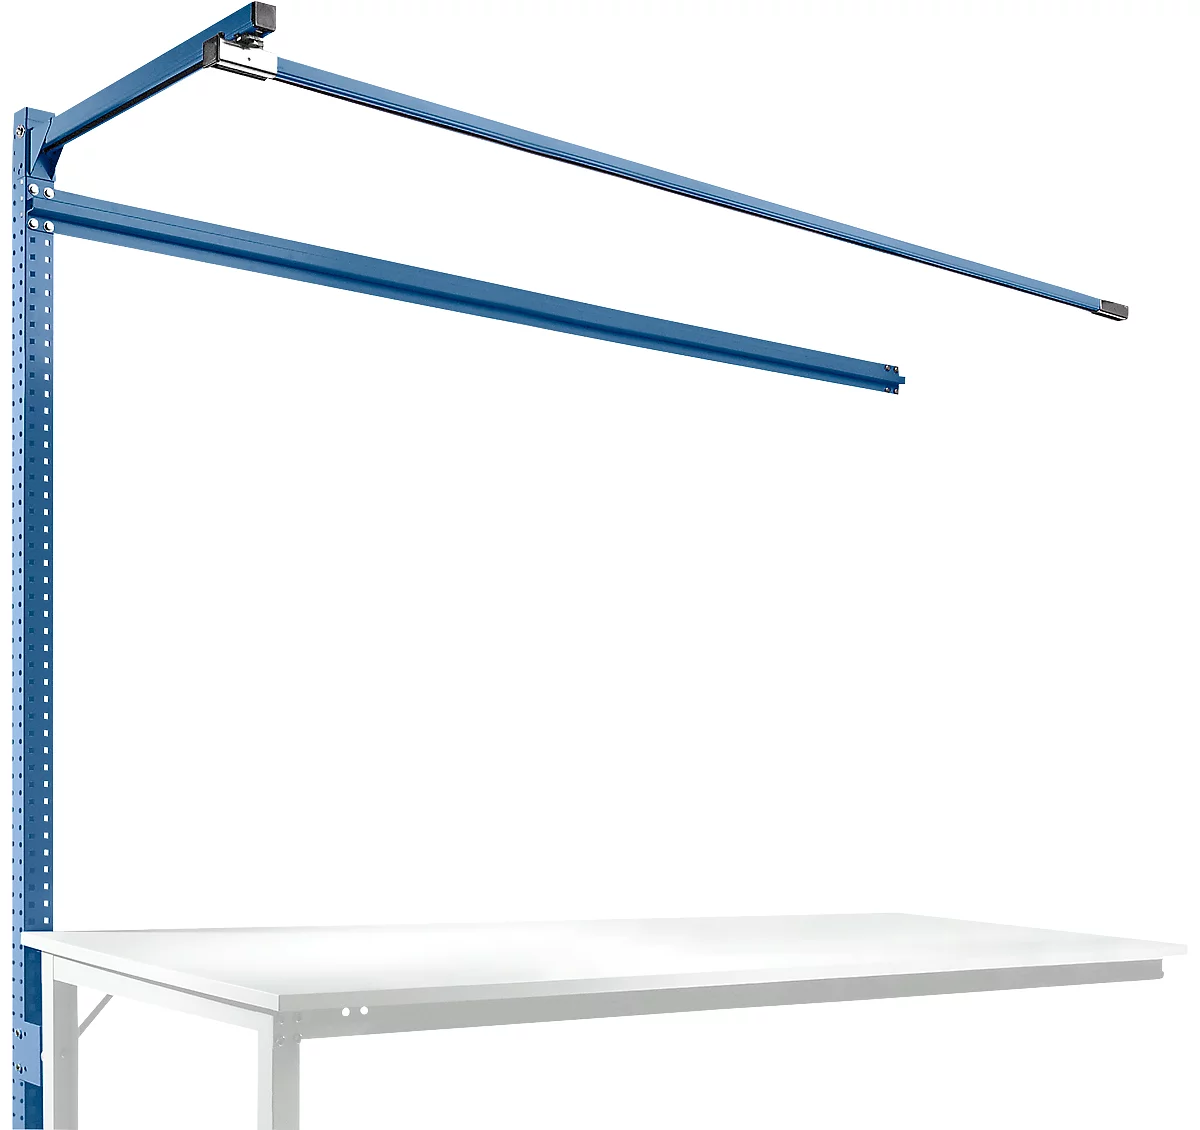 Estructura pórtica adicional con brazo saliente, Mesa de extensión SPEZIAL mesa de trabajo/banco de trabajo UNIVERSAL/PROFI, 2000 mm, azul brillante